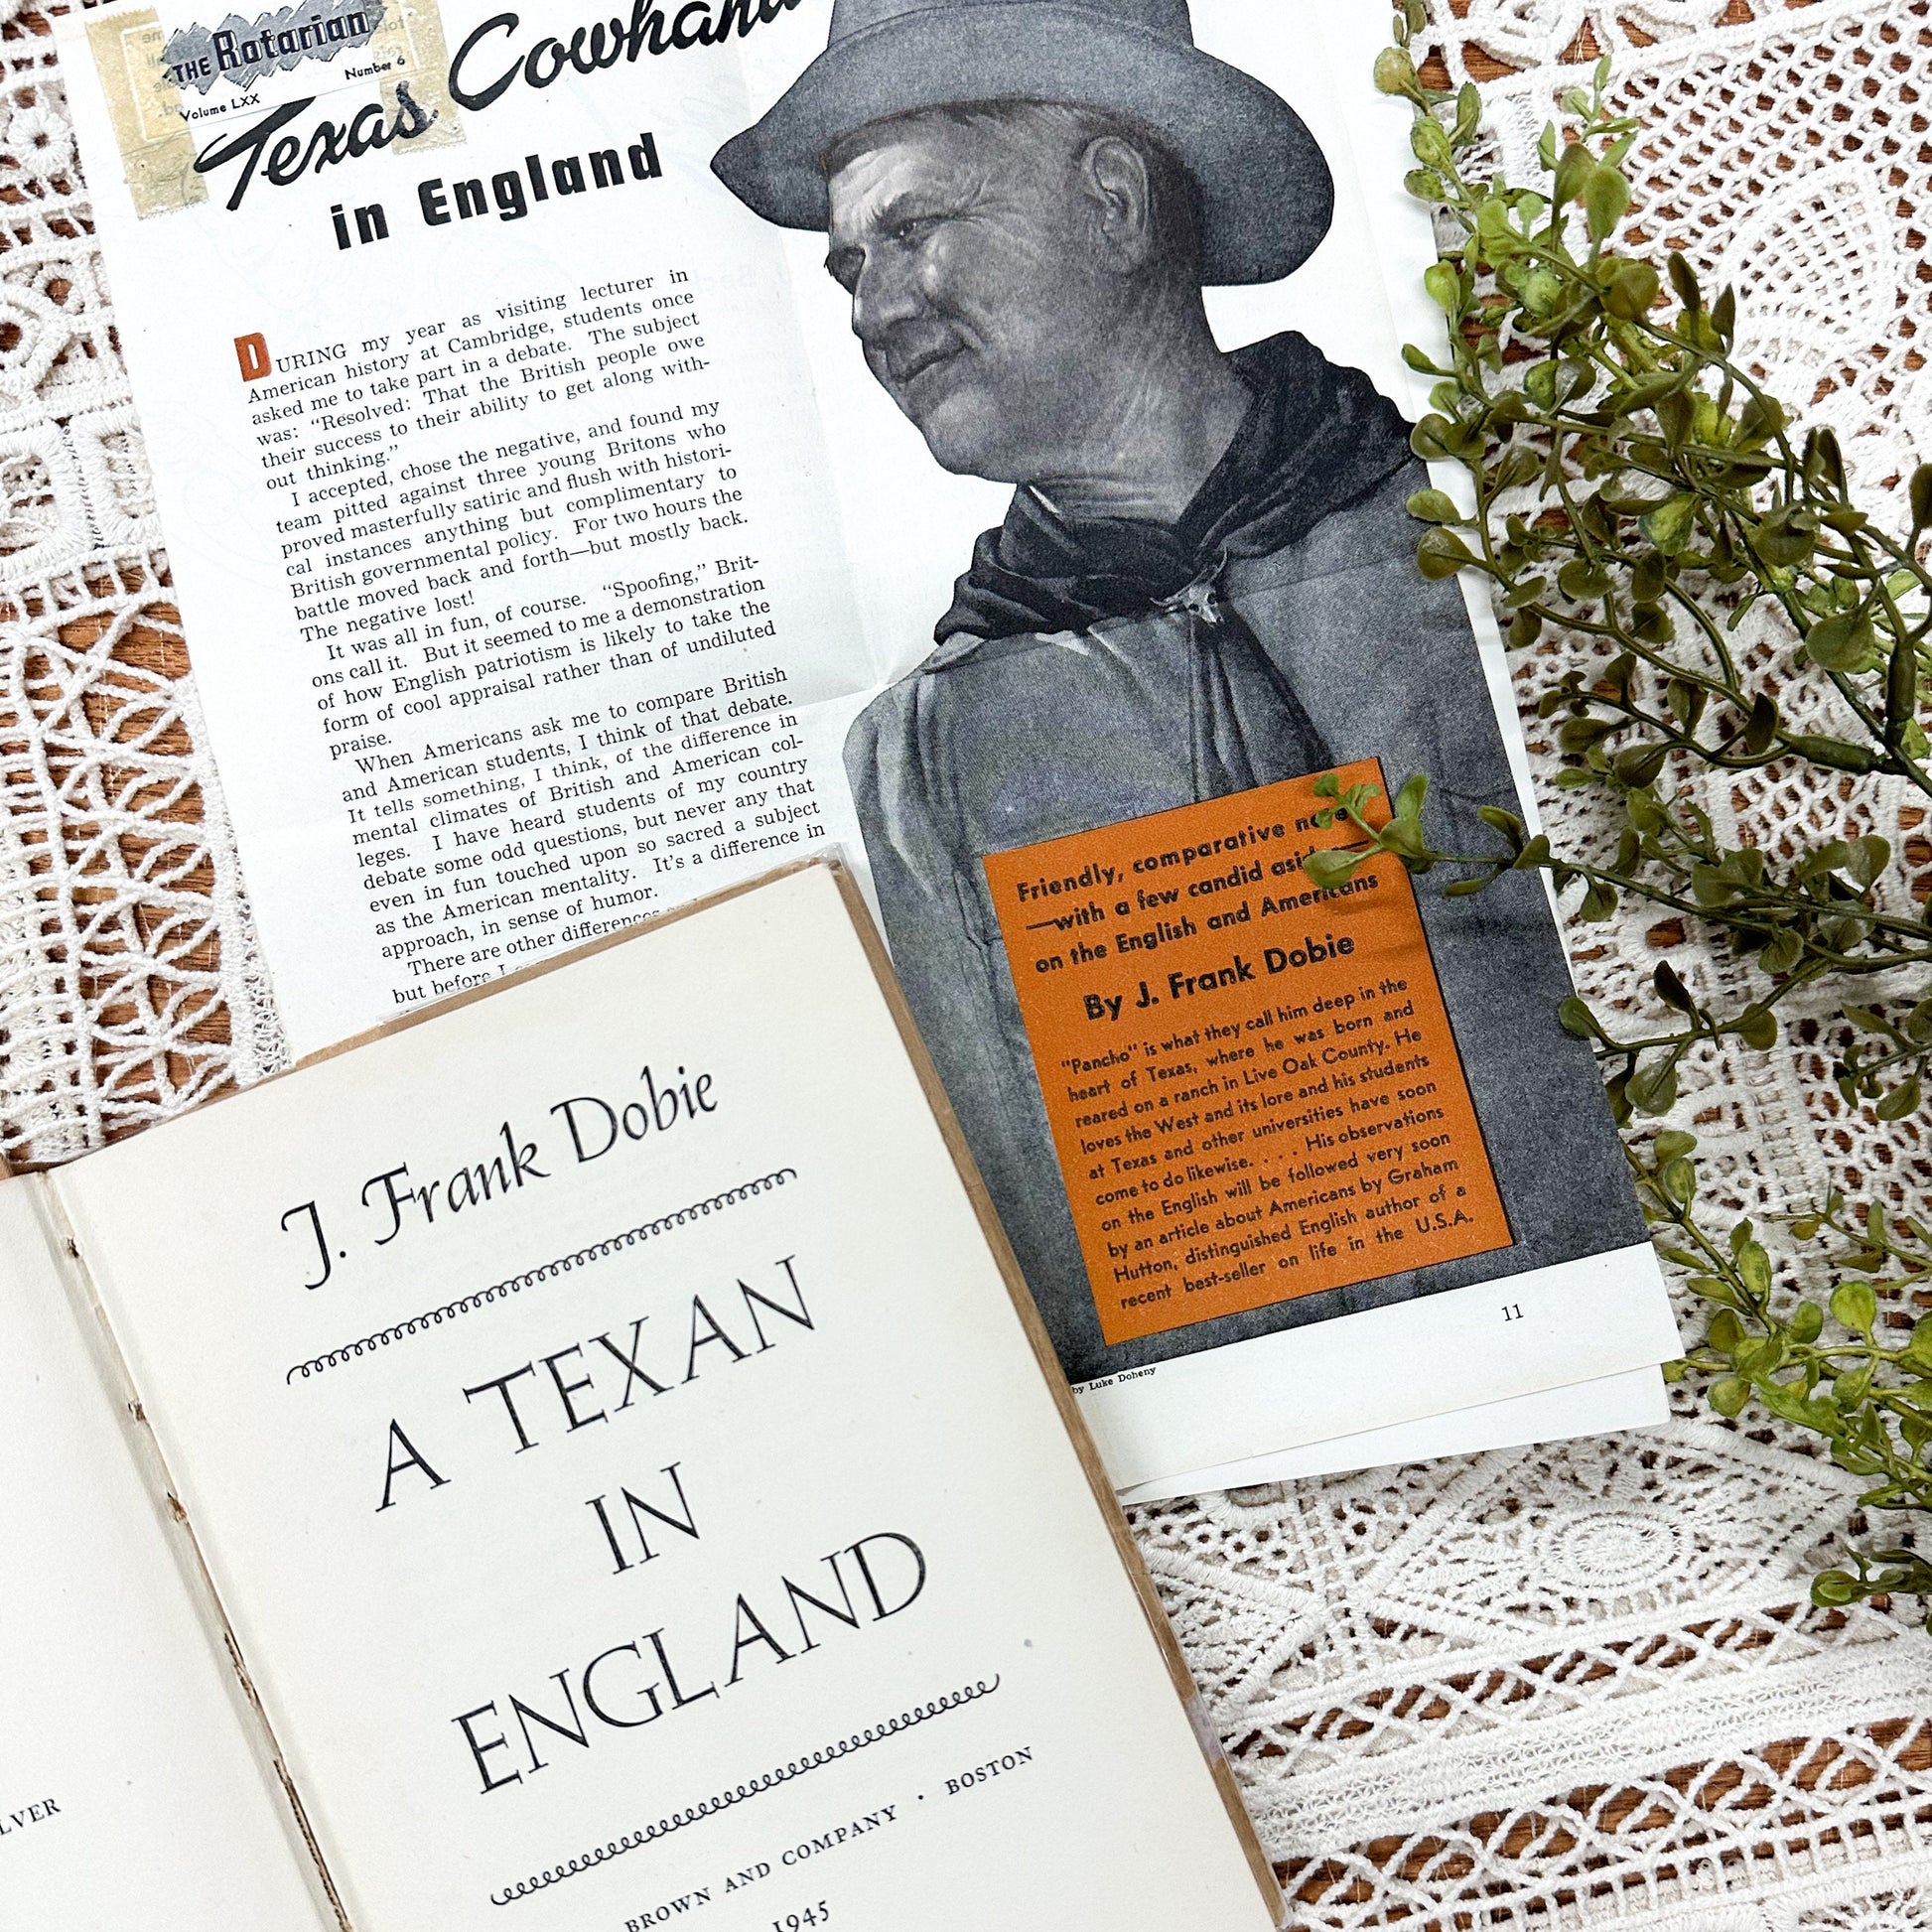 A Texan in England by J. Frank Dobie